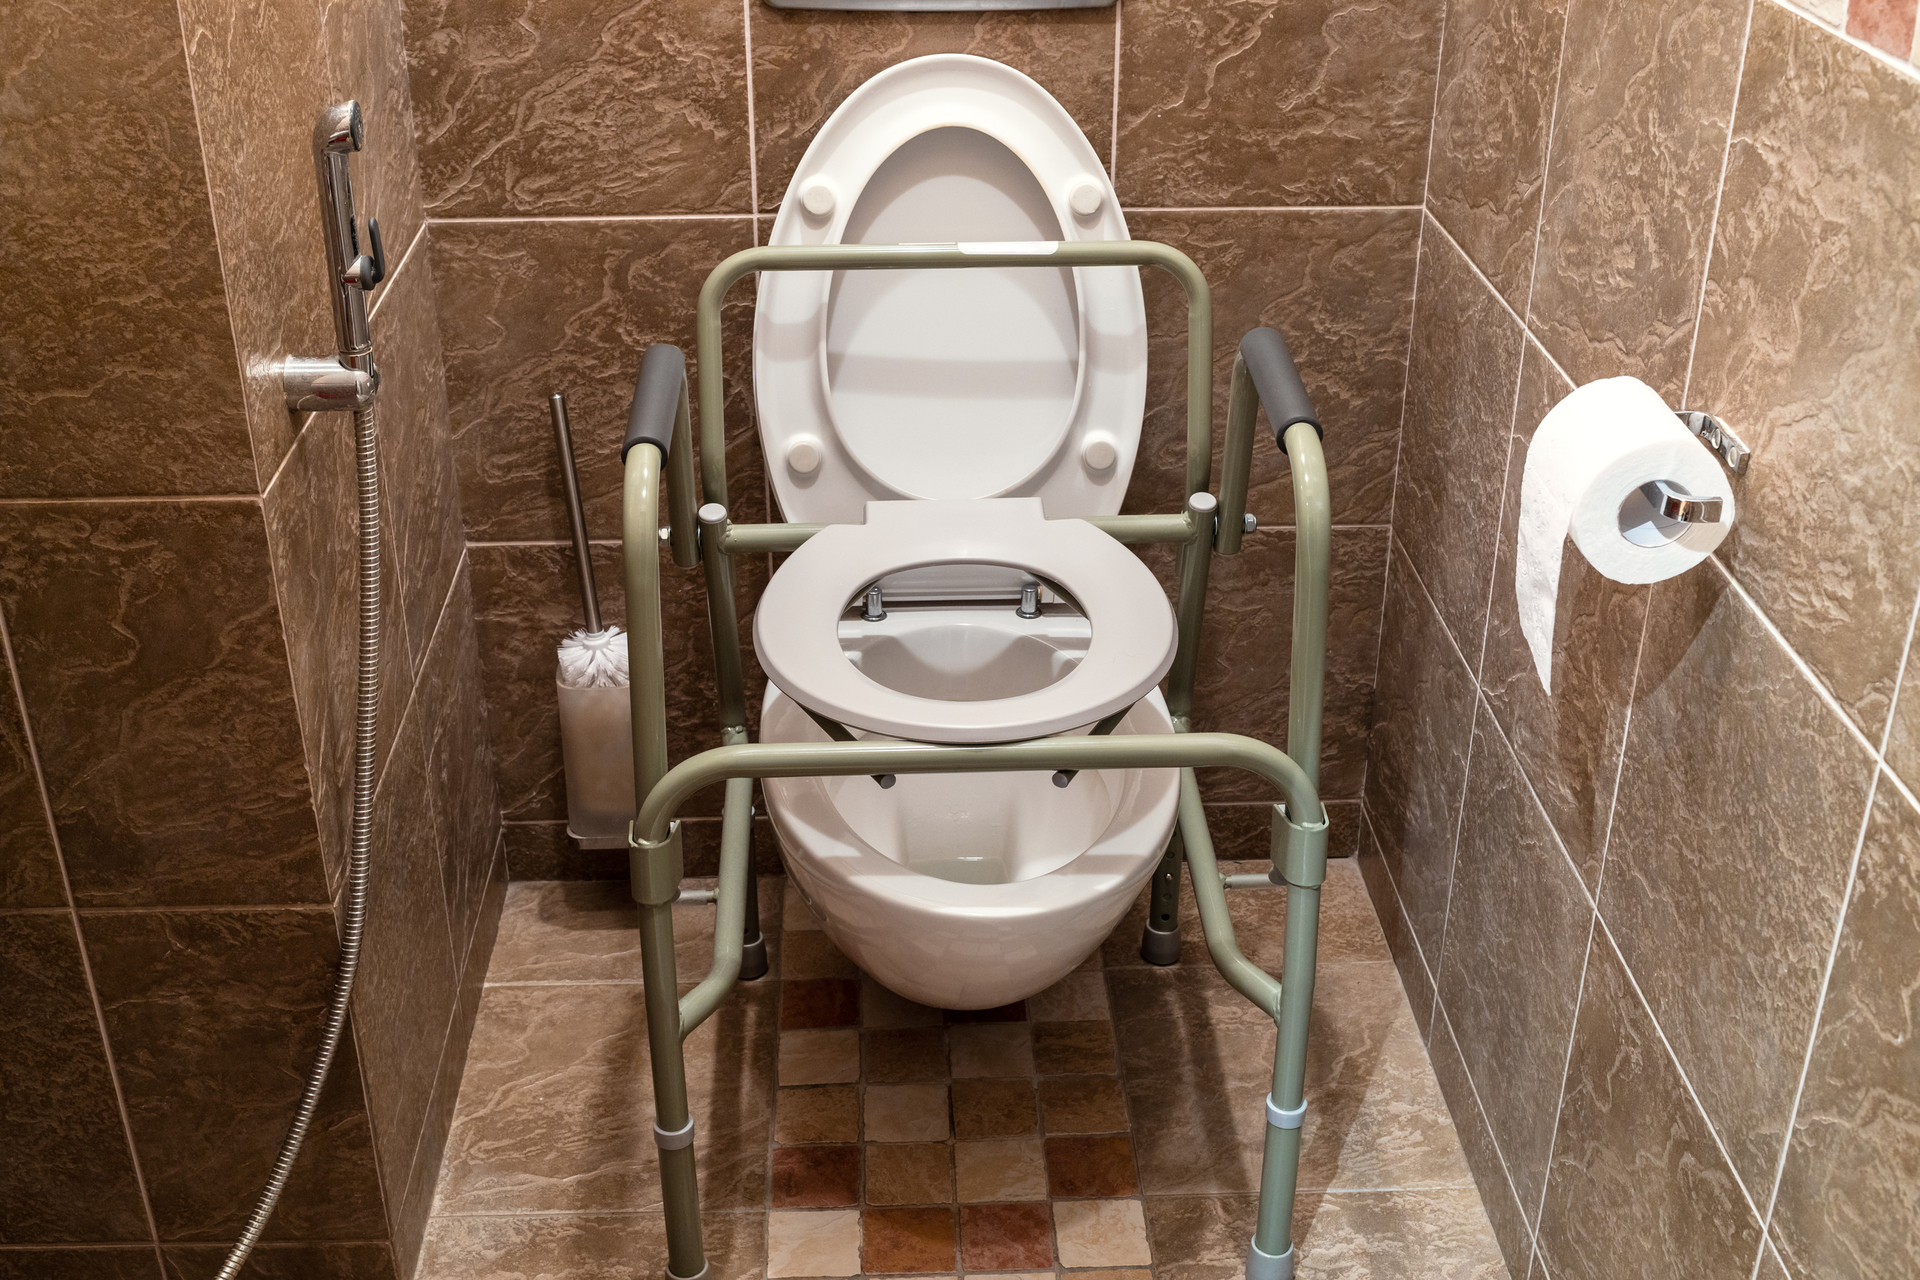 Na obrazku możemy zobaczyć specjalnie dostosowaną toaletę dla osób niepełnosprawnych. Toaleta posiada podwyższone siedzisko, ułatwiające korzystanie osobom z ograniczoną mobilnością. Dodatkowo, widoczne są poręcze przy toalecie, które zapewniają dodatkowe wsparcie i bezpieczeństwo podczas korzystania z niej. Projekt toalety dla niepełnosprawnych uwzględnia ich specyficzne potrzeby, zapewniając komfort i dostępność dla wszystkich użytkowników